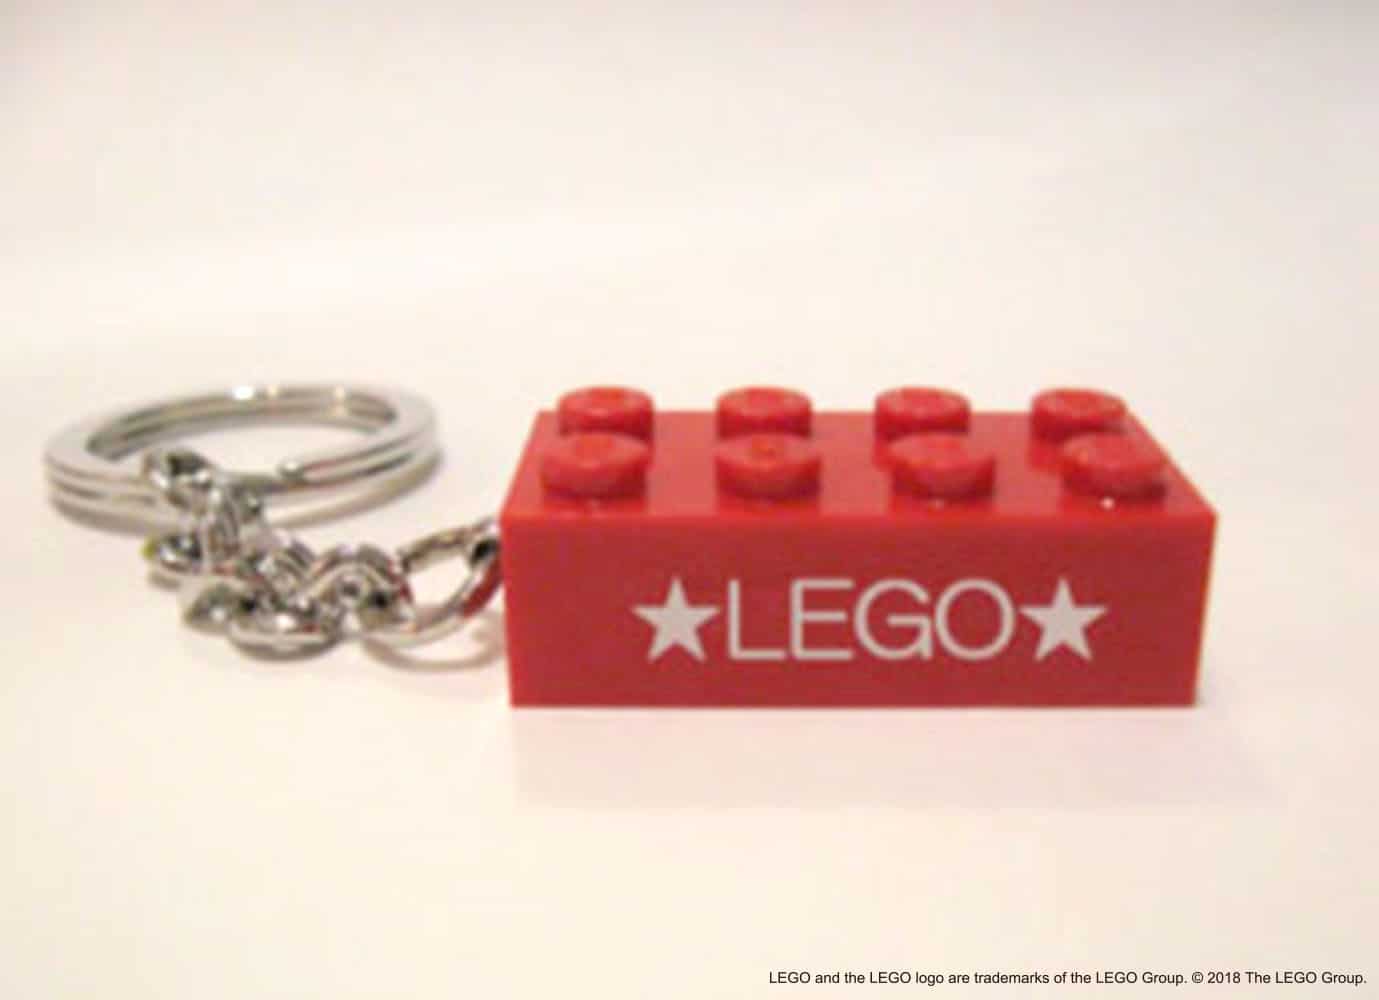 พวงกุญแจเลโก้ที่สามารถสลักชื่อได้